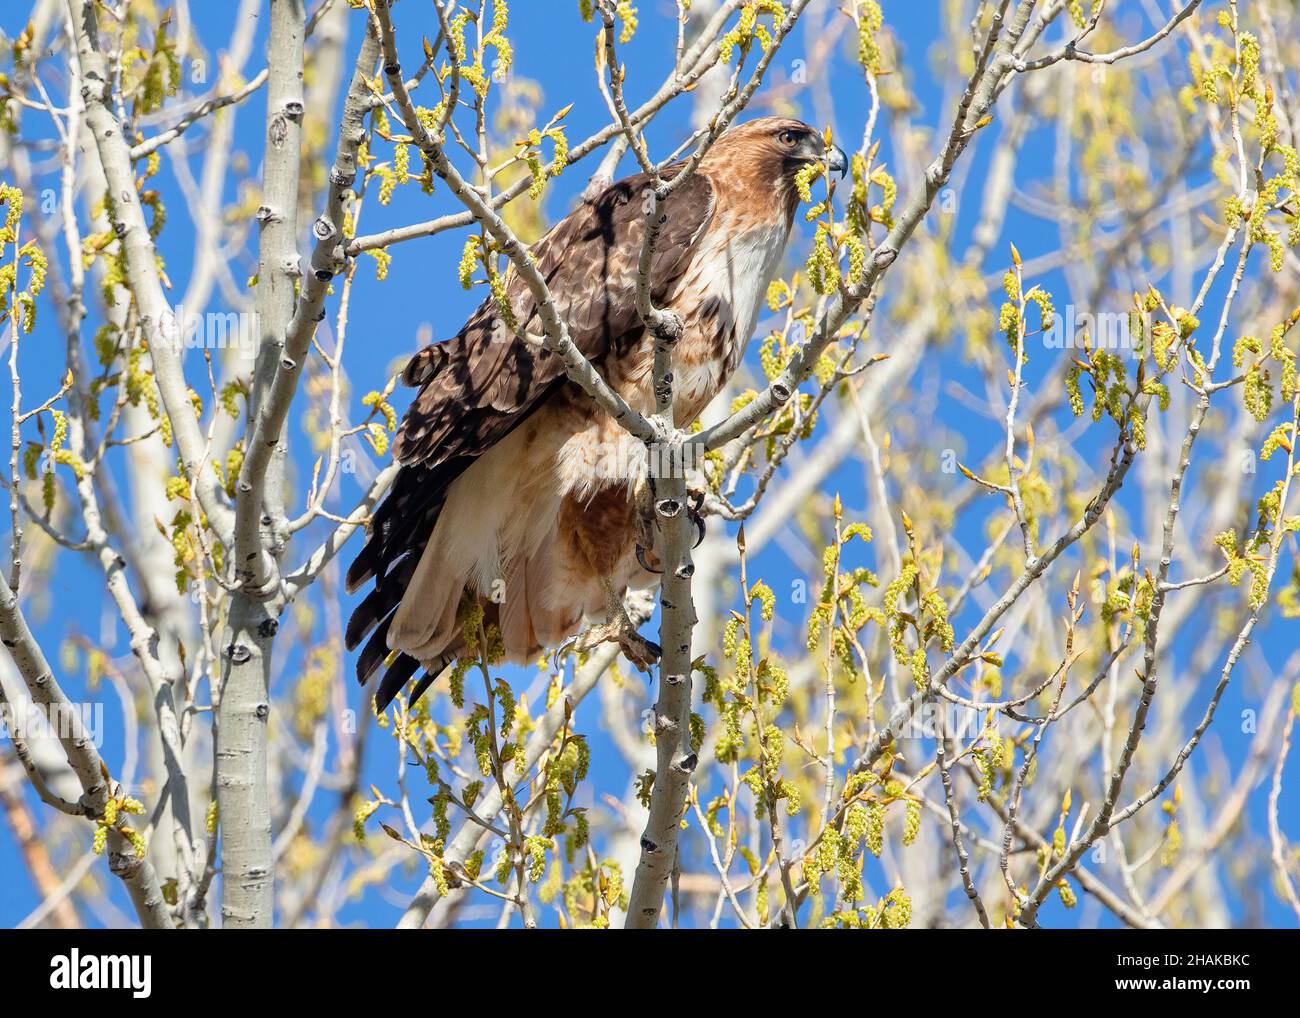 Nahaufnahme eines Red-tailed Hawk, der sein Bein ausstreckt, während er im Frühling auf einem frisch aufkeimenden Baum thront, mit einem wunderschönen blauen Himmel im Hintergrund. Stockfoto